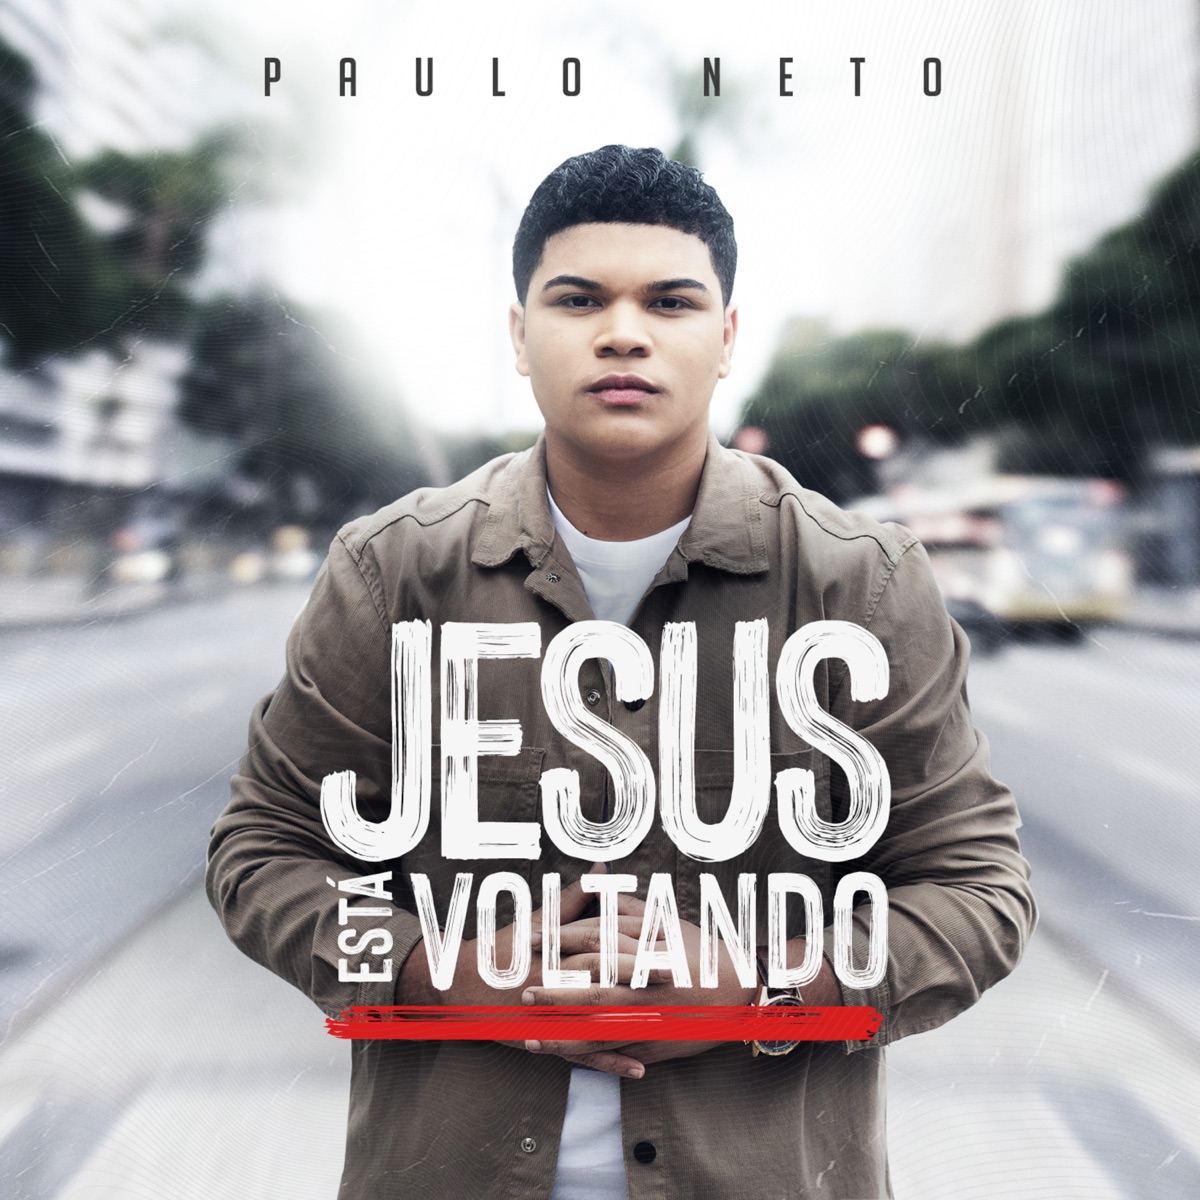 Paulo Neto lança sua nova música Ao Teu Encontro, com Manú Paiva - News  Gospel